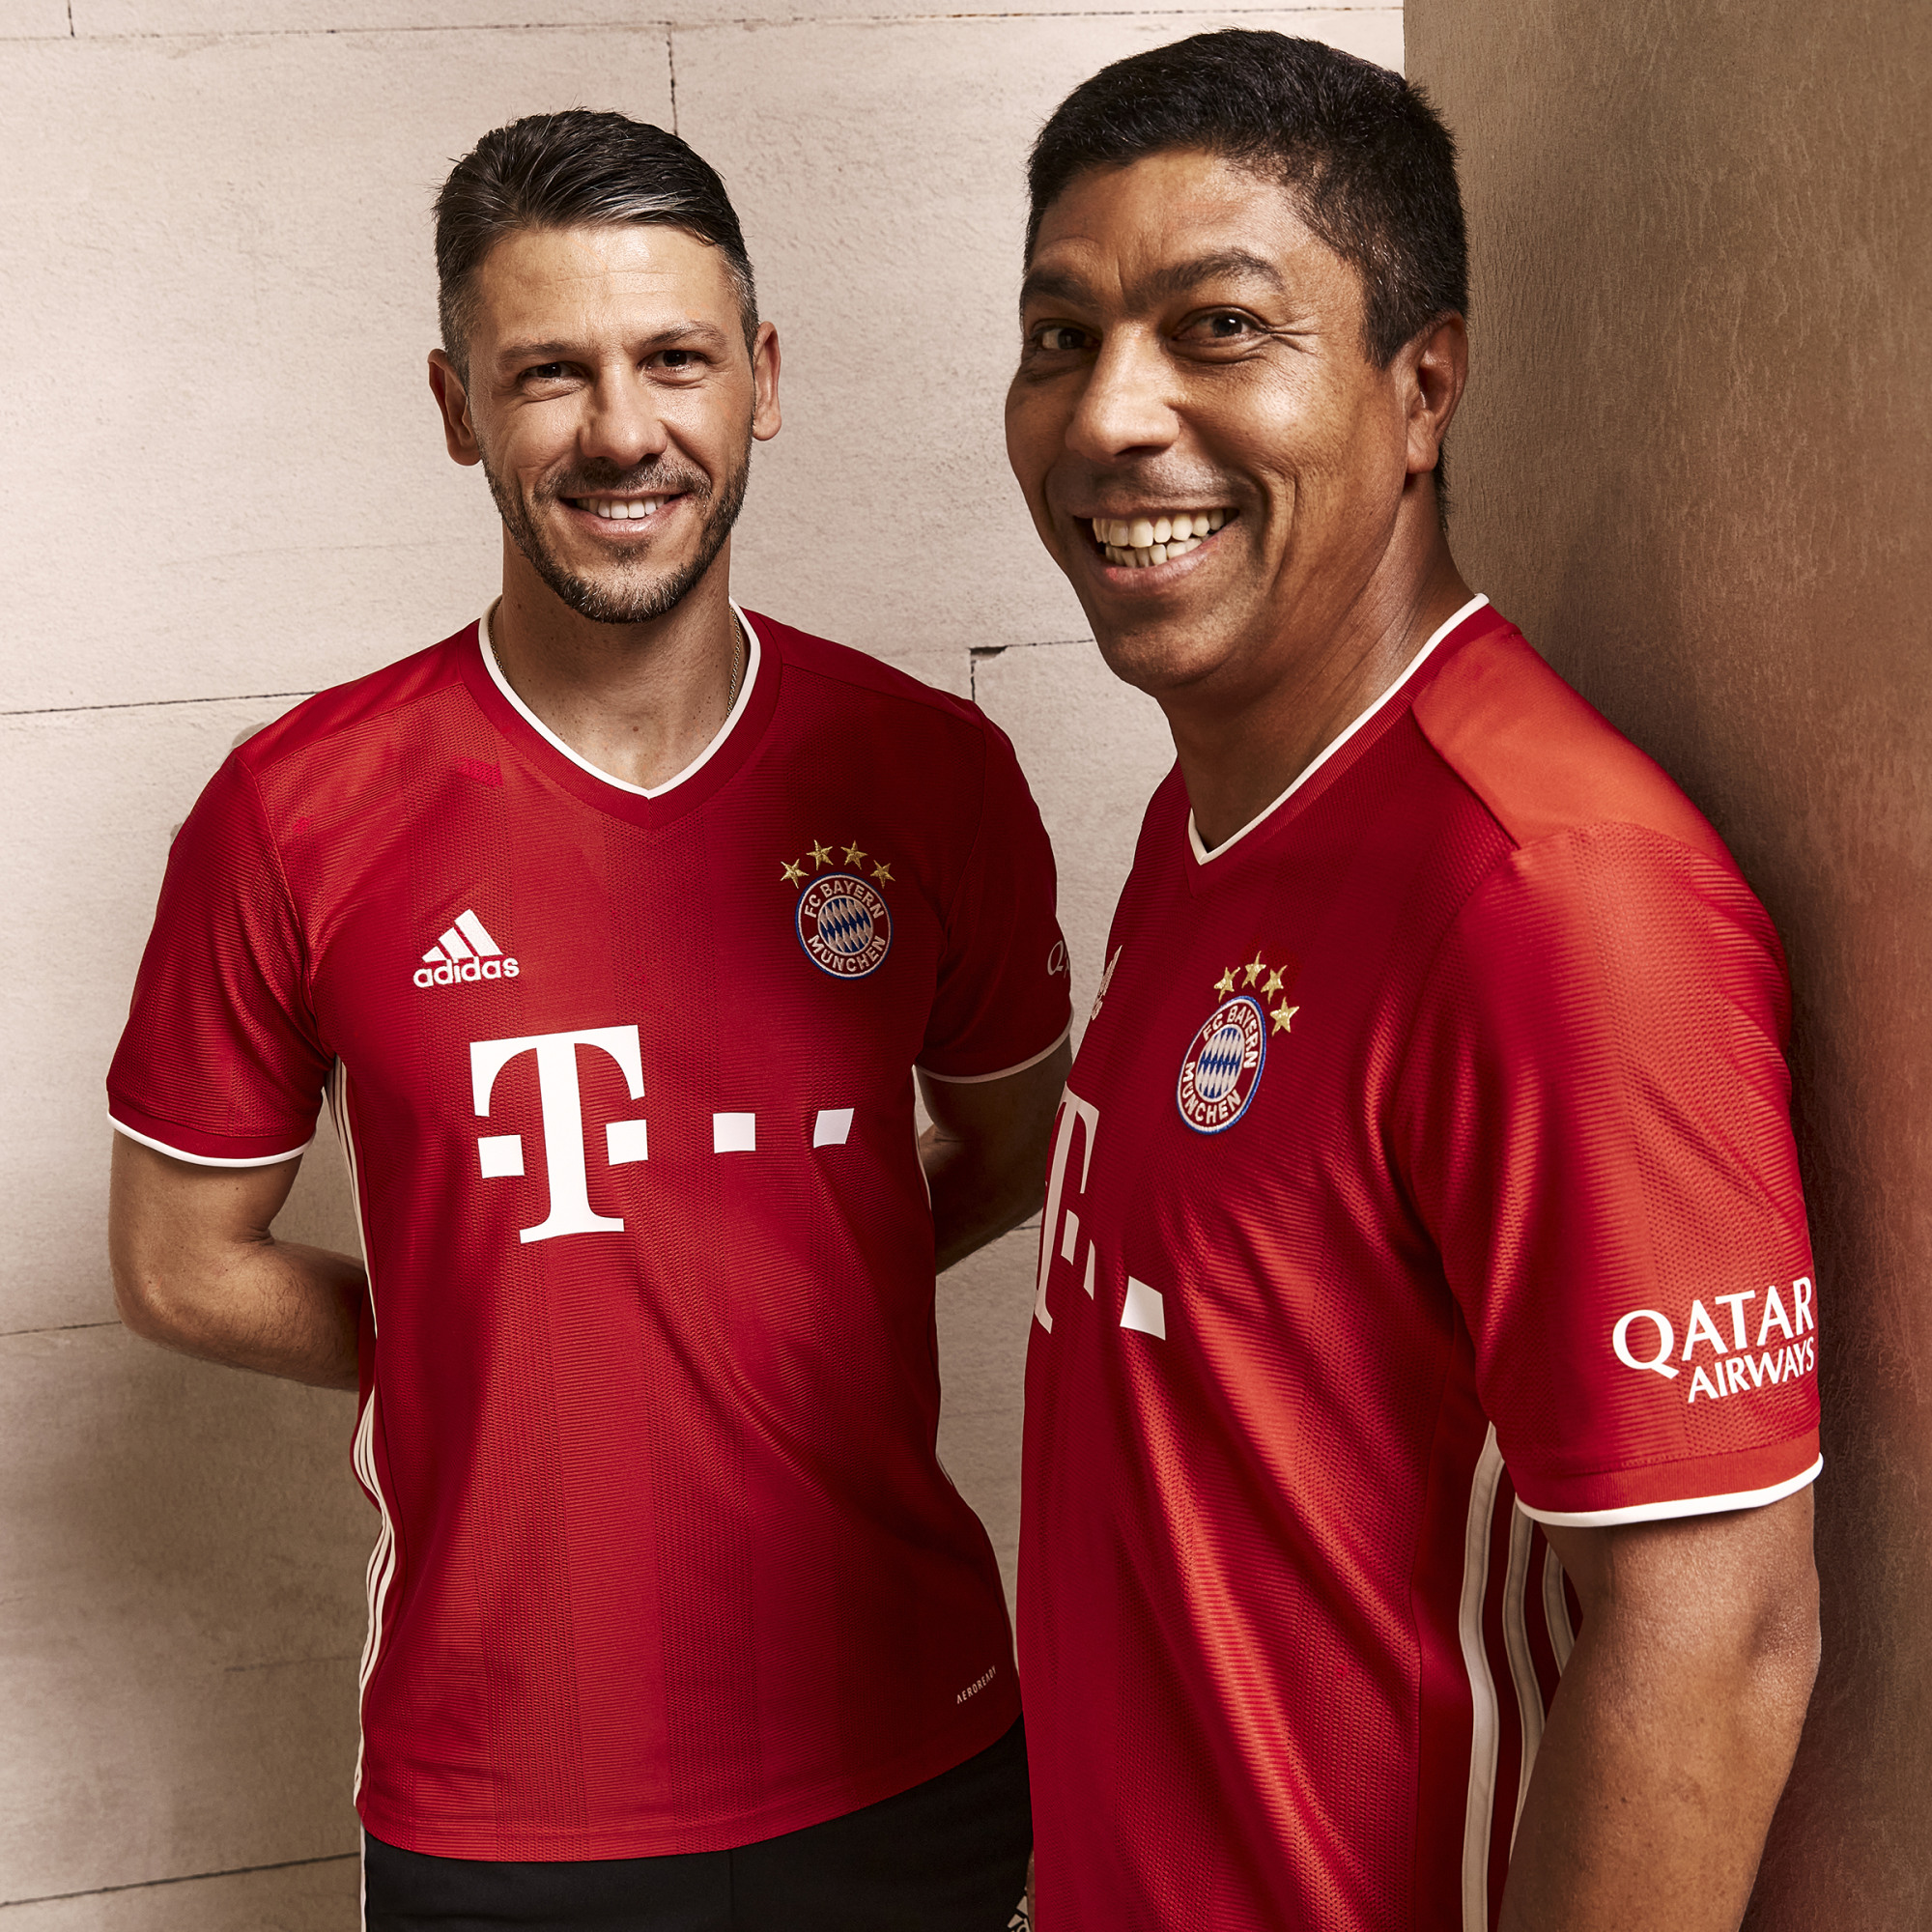 Bayern Munich 2020-21 Adidas Home Kit | 20/21 Kits ...